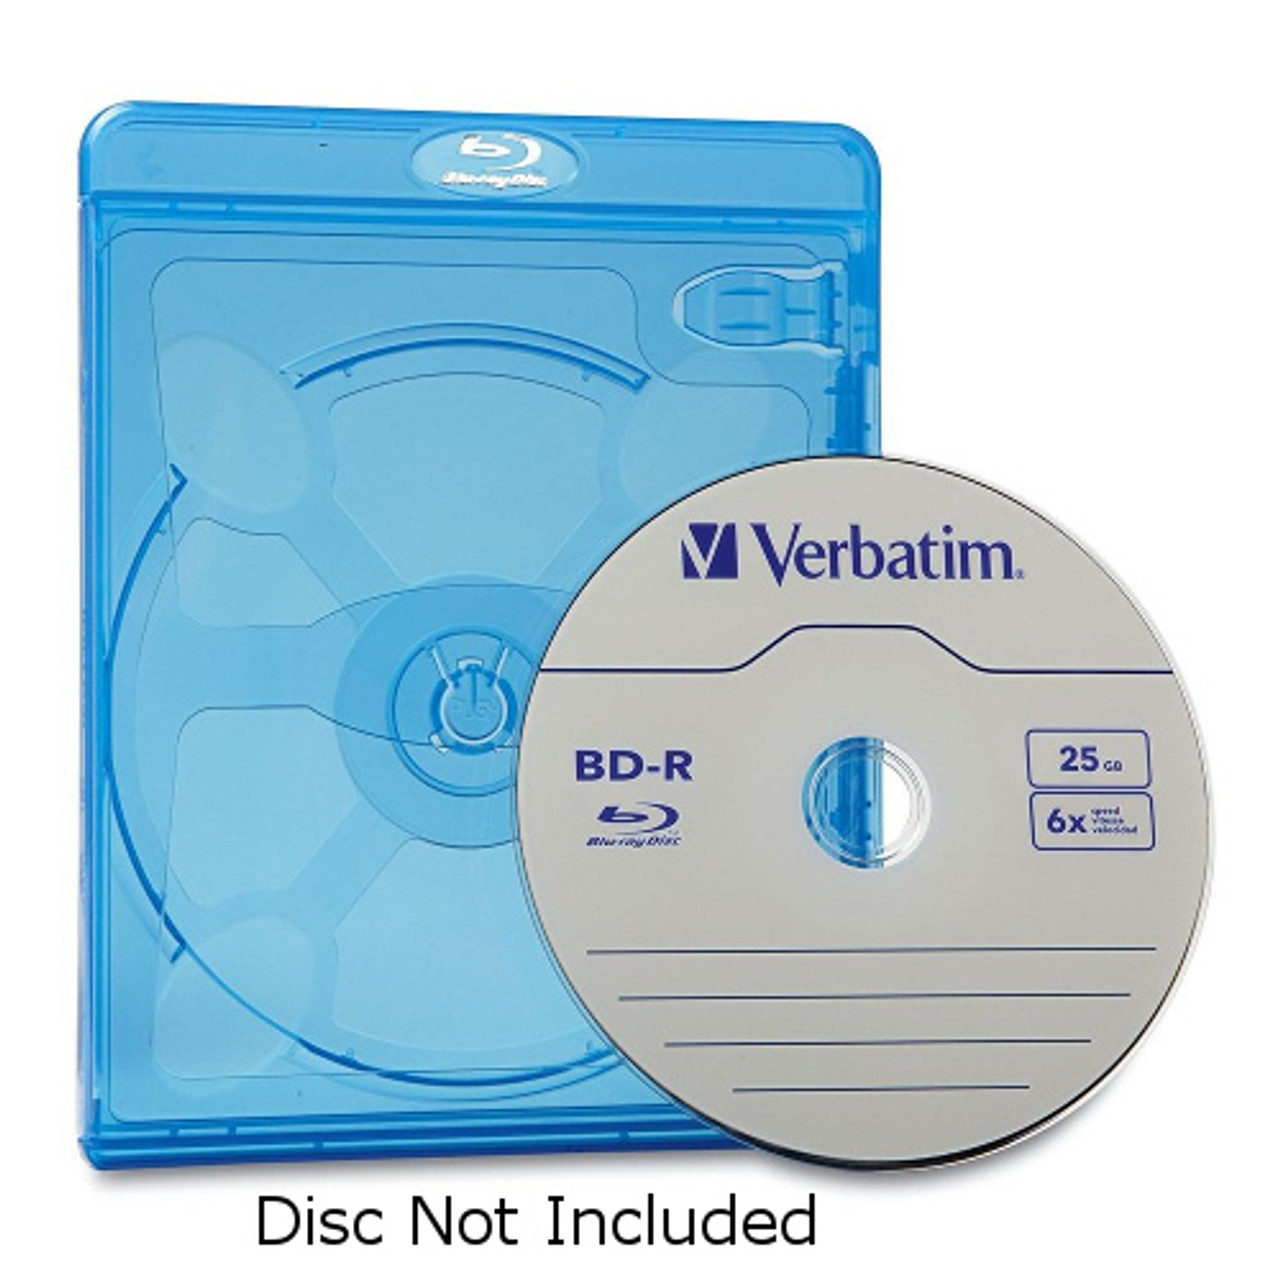 OWC 16X DVD-R Write-Once Disc with Slimline Jewel Case